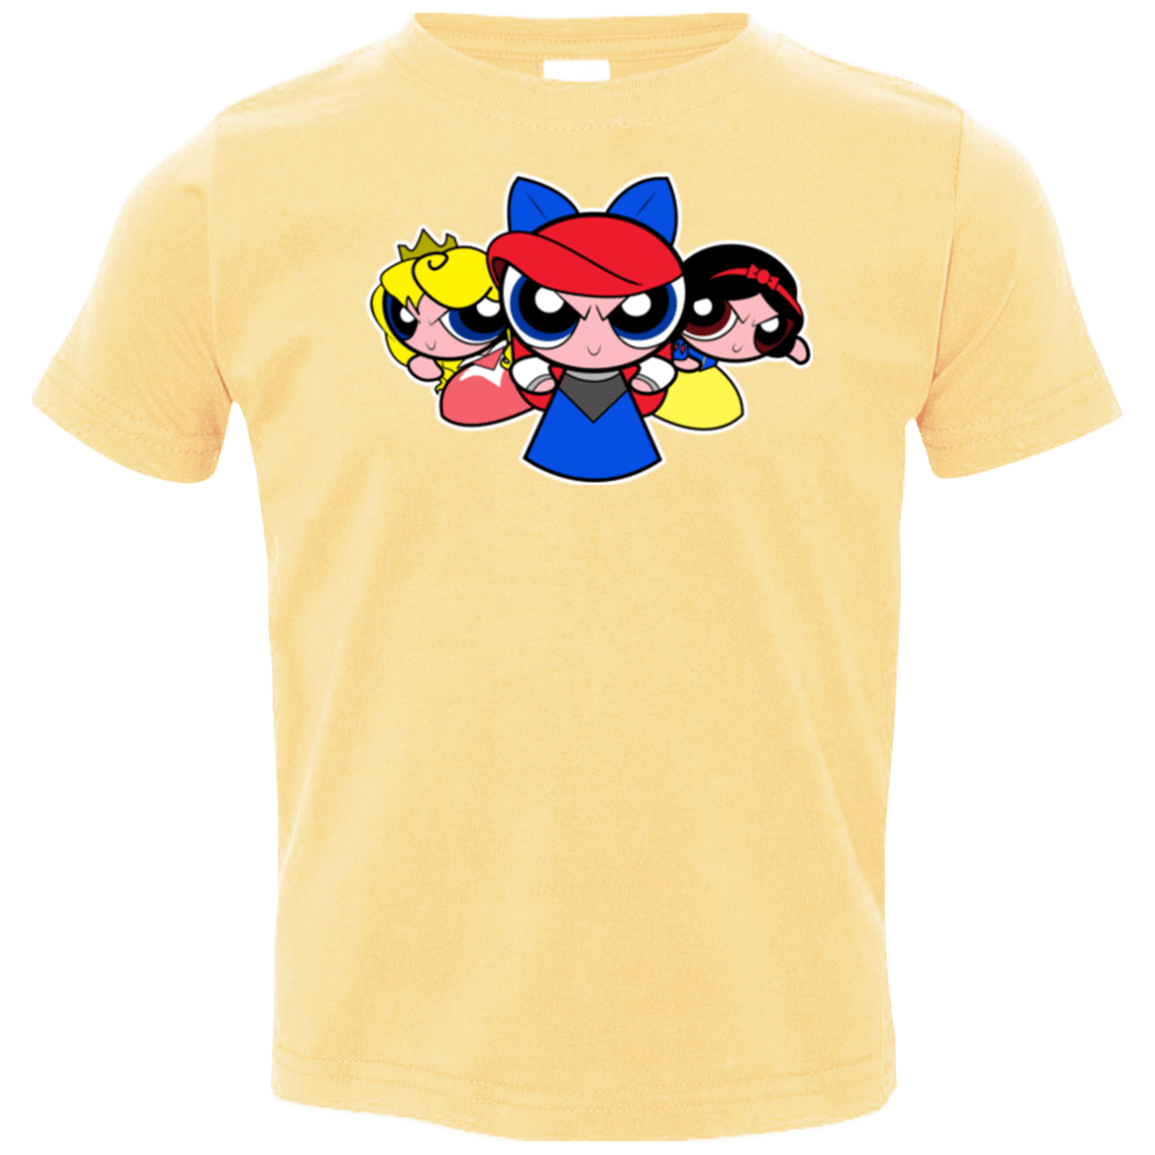 T-Shirts Butter / 2T Princess Puff Girls Toddler Premium T-Shirt